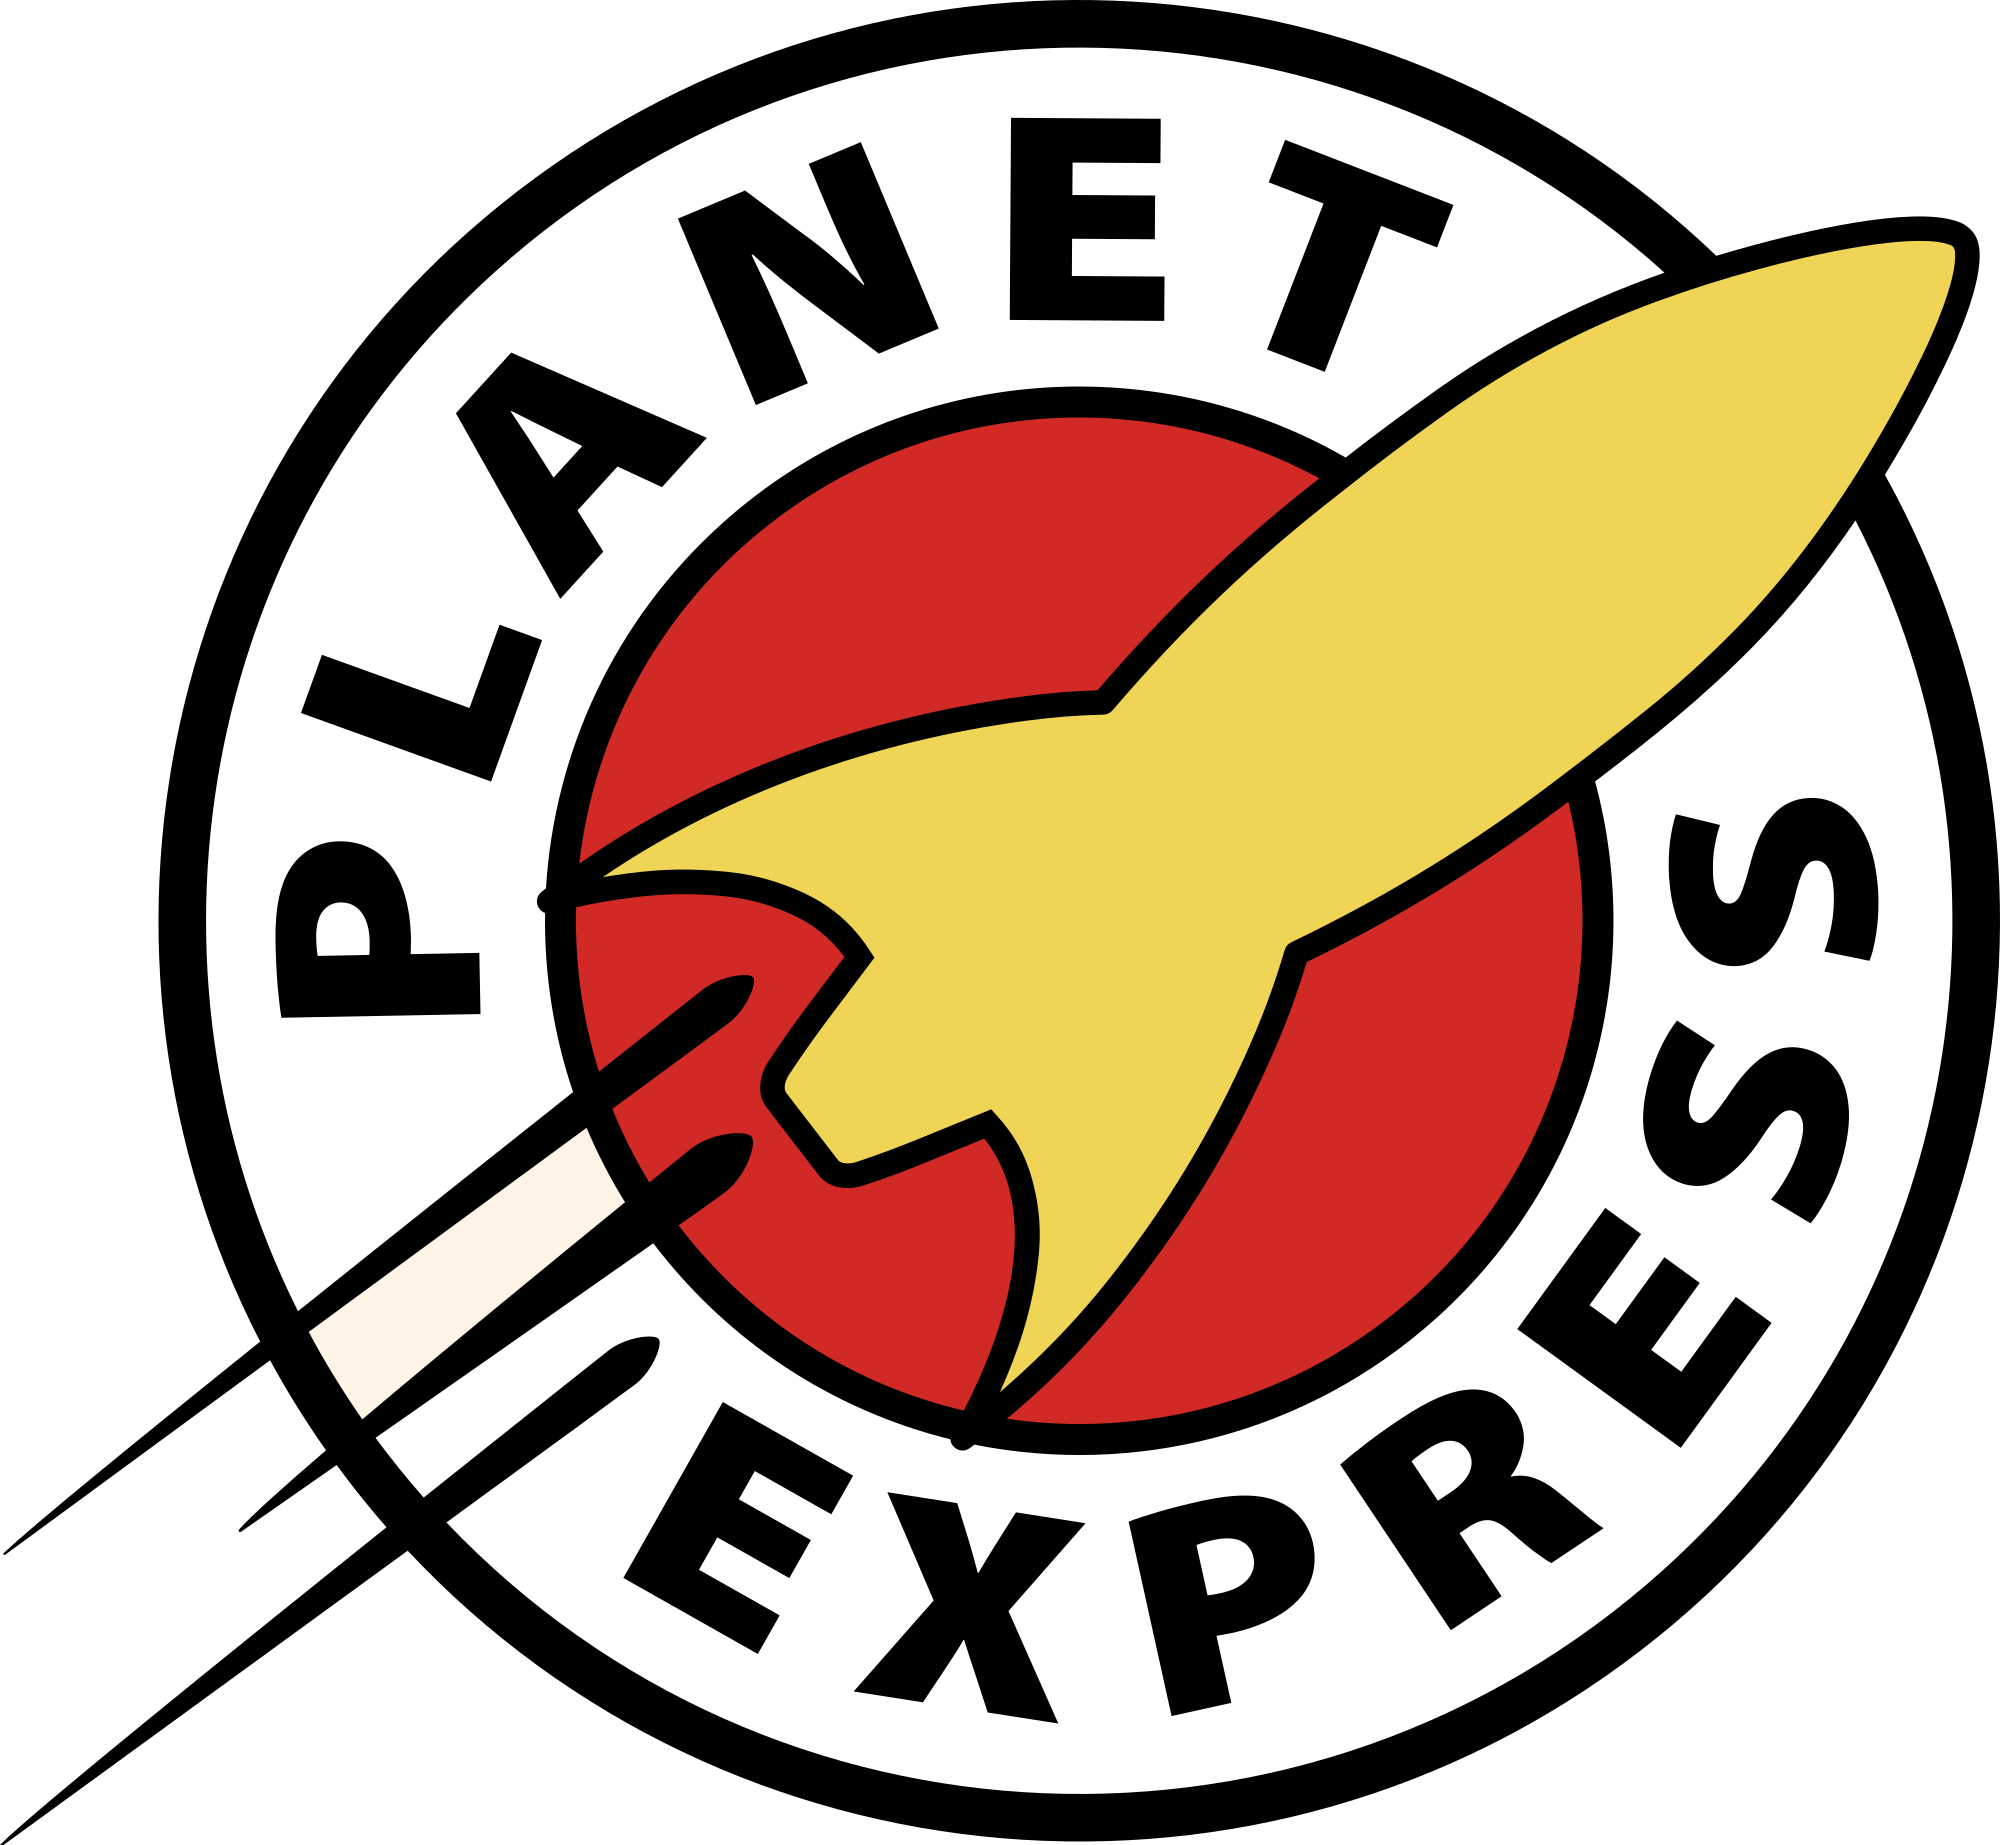 Futurama Logo - File:Futurama Planet Express.svg - Wikimedia Commons